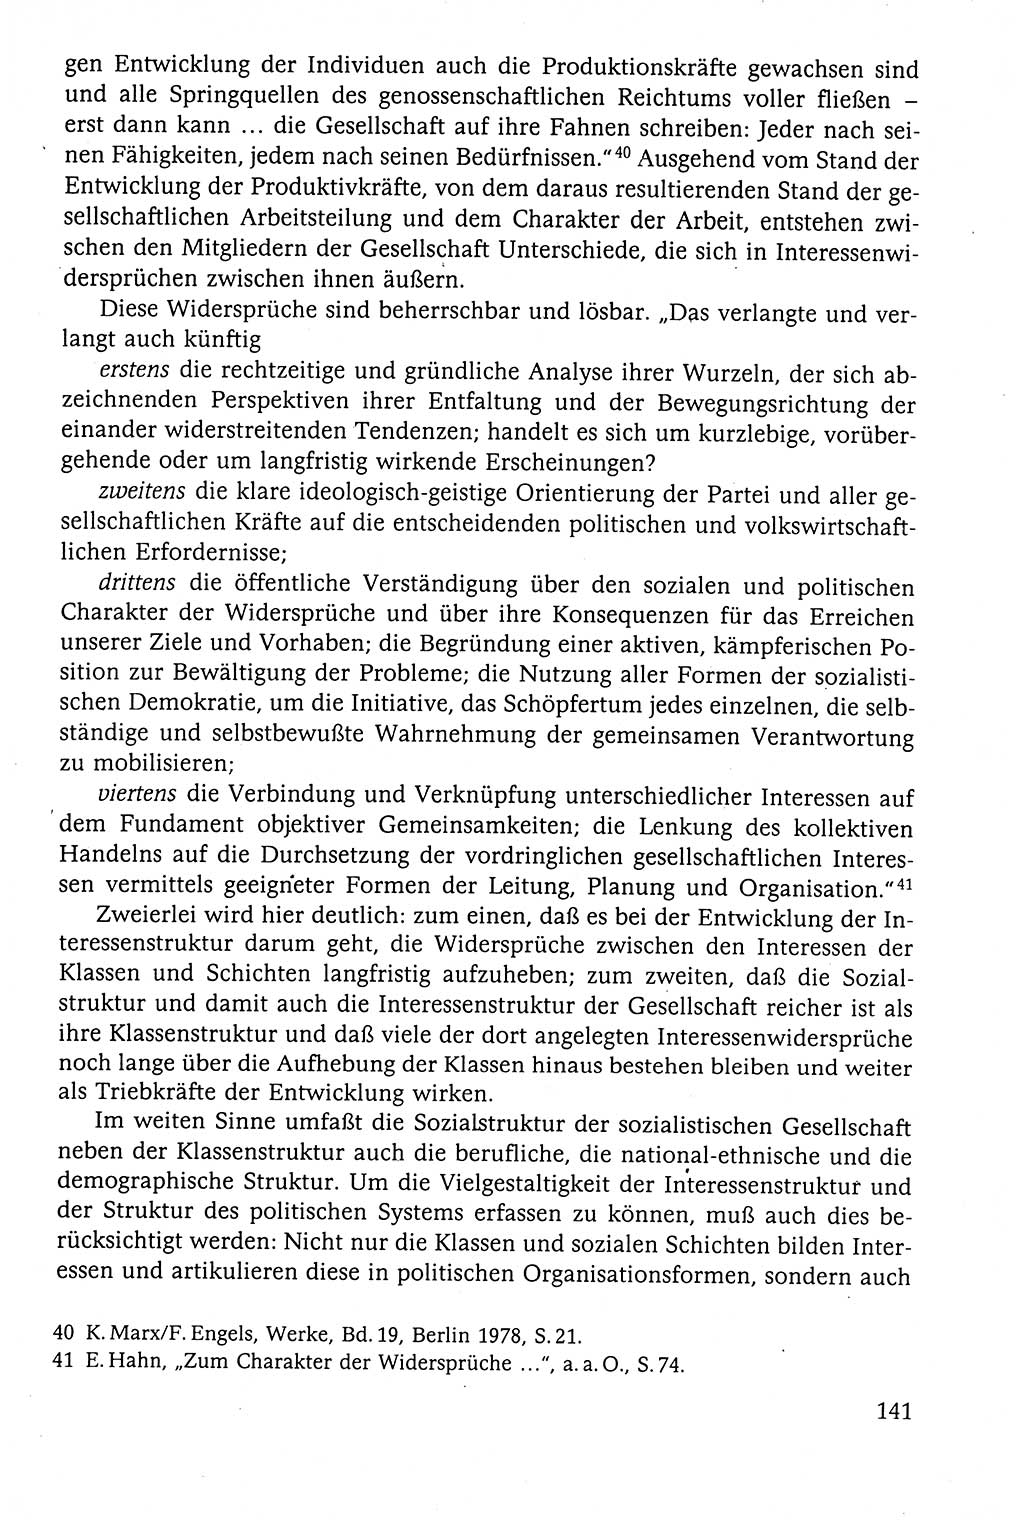 Der Staat im politischen System der DDR (Deutsche Demokratische Republik) 1986, Seite 141 (St. pol. Sys. DDR 1986, S. 141)